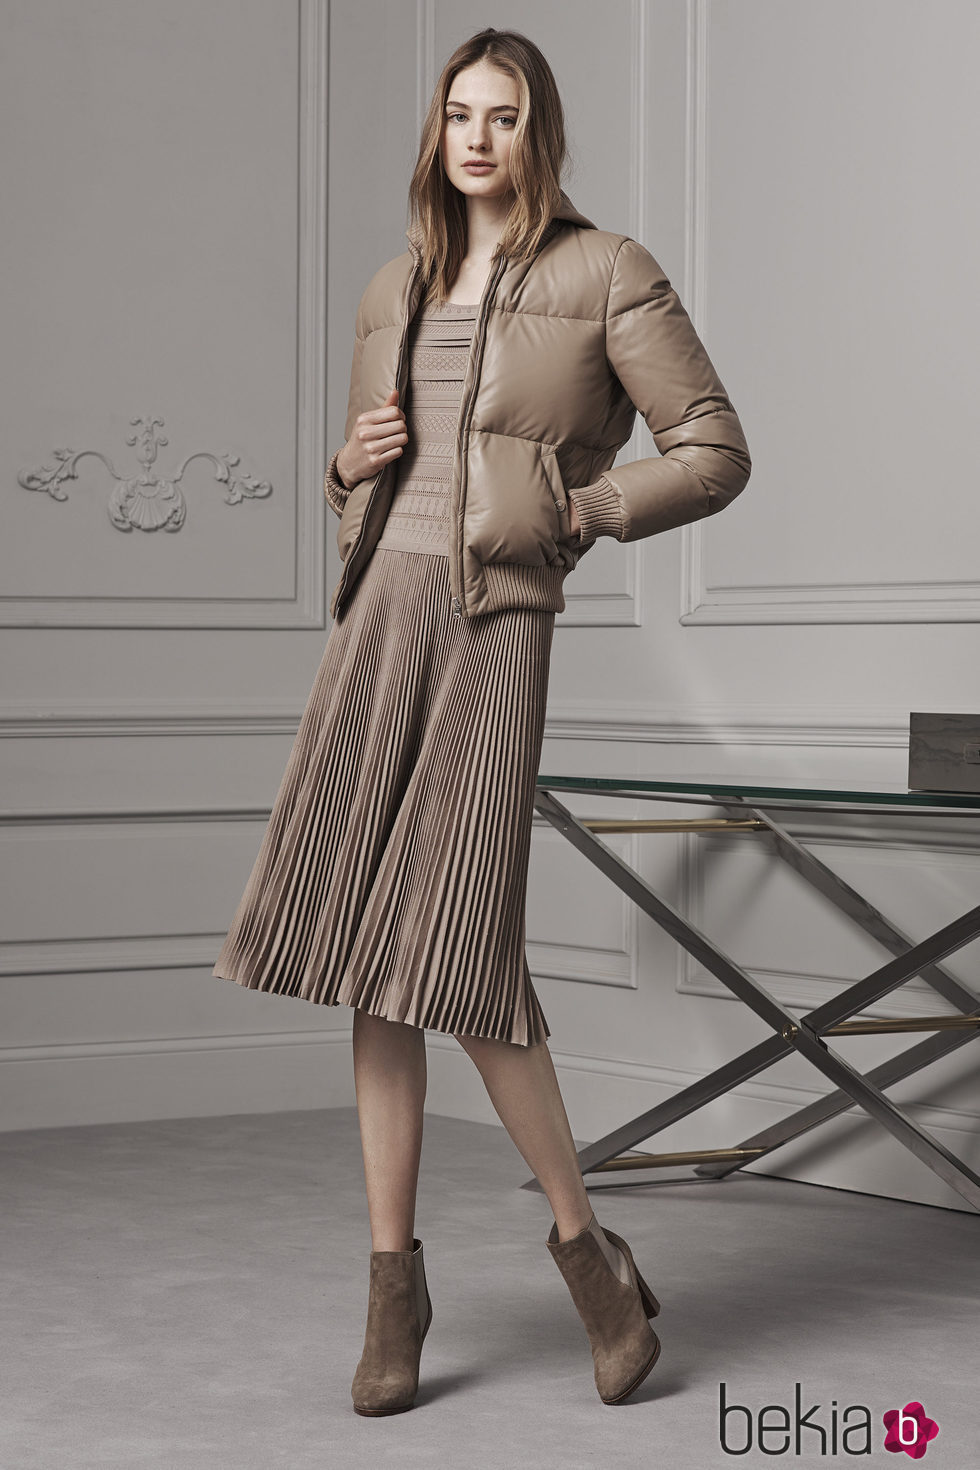 Abrigo y falda midi plisada en tonos neutros de Ralph Lauren para la colección Pre-Fall 2016